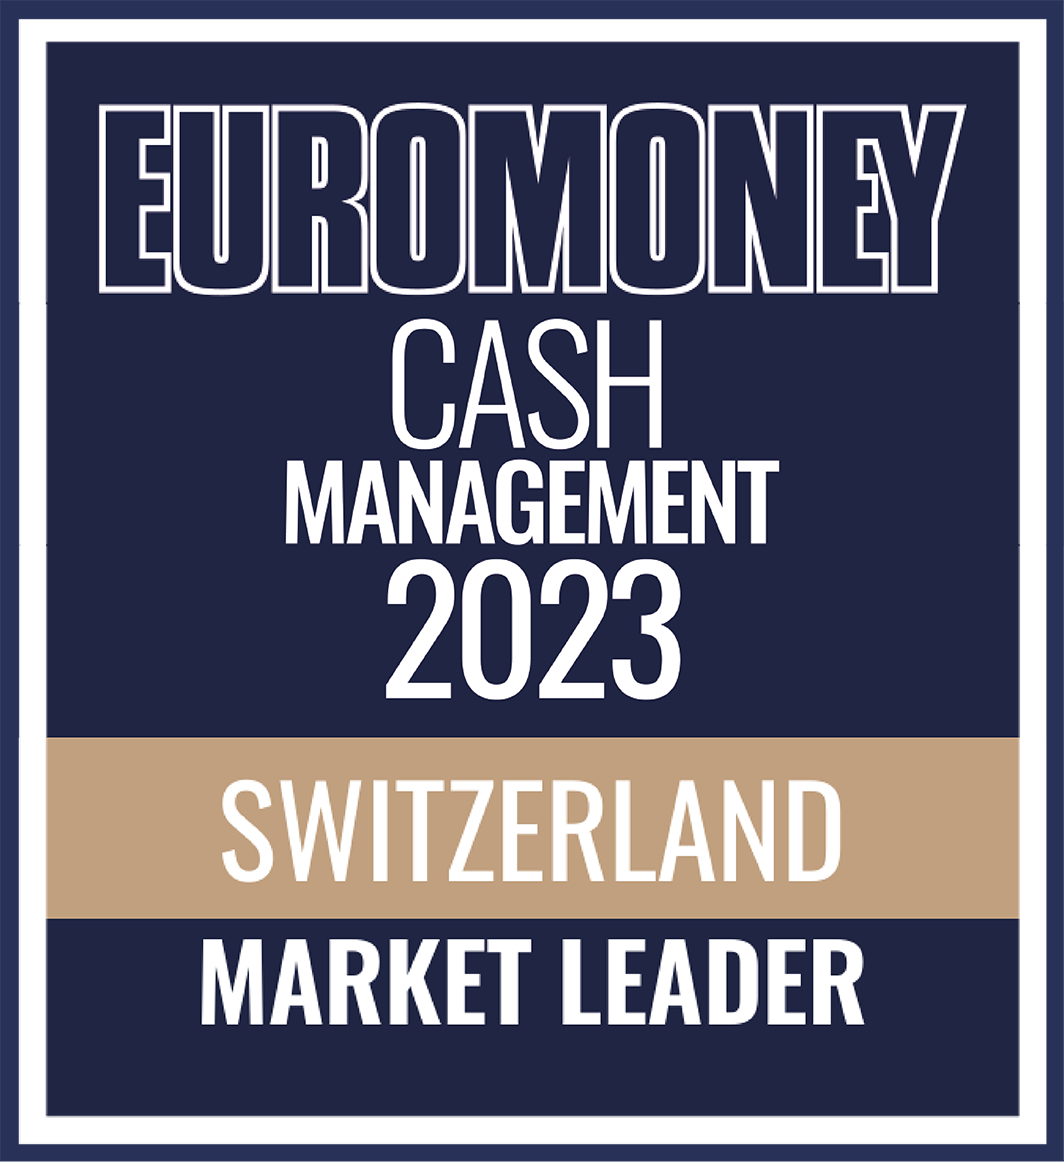 Euromoney cash management 2023 Logo del premio leader di mercato svizzero